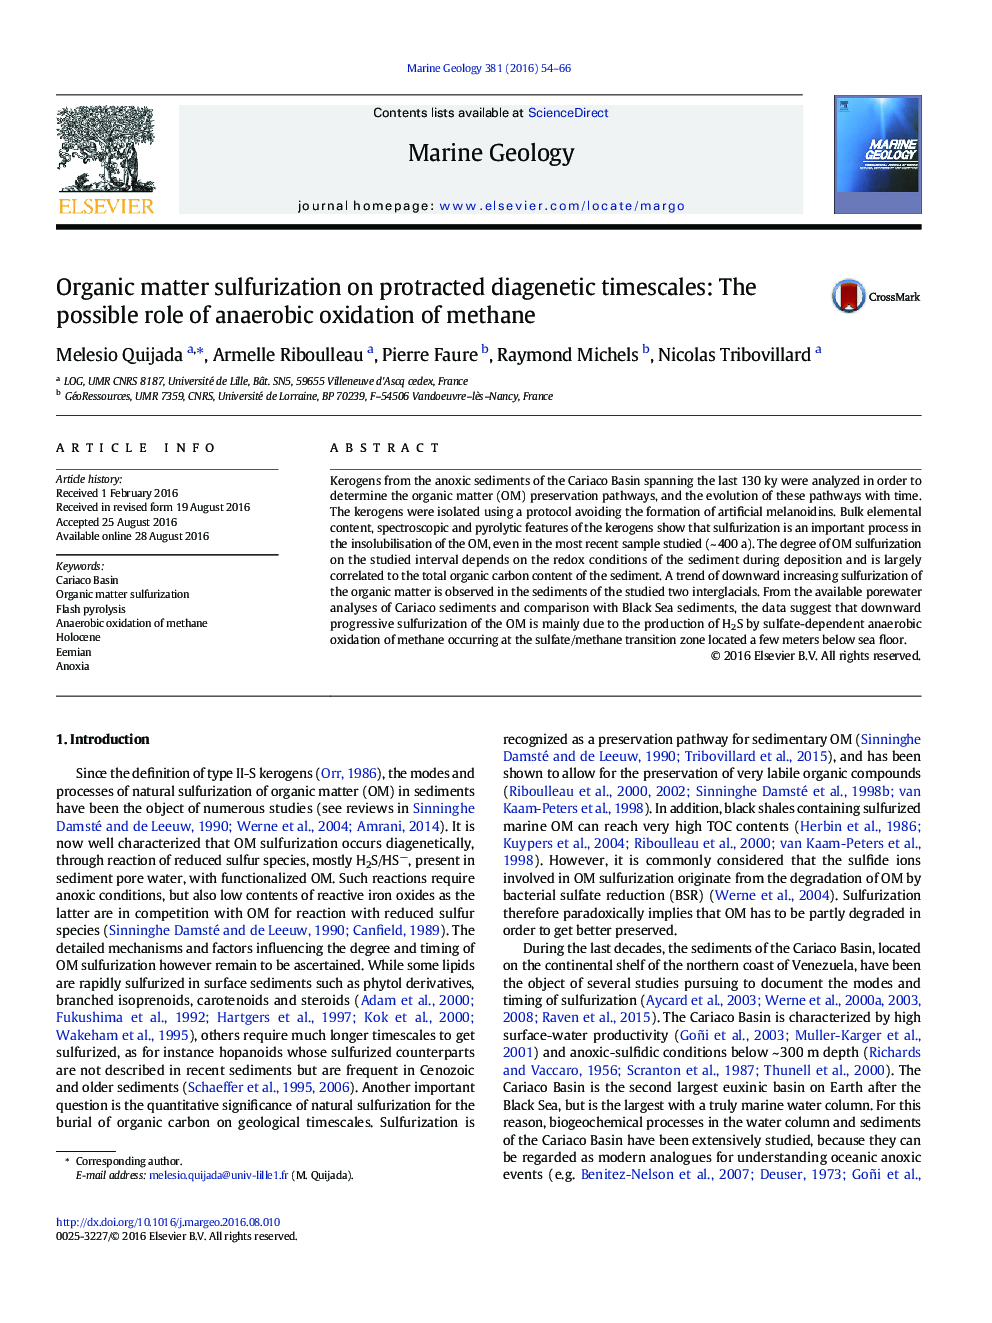 سولفوریزاسیون ماده آلی در زمانبندی های طولانی مدت دیگنتیک: نقش احتمالی اکسایش بی هوازی متان 